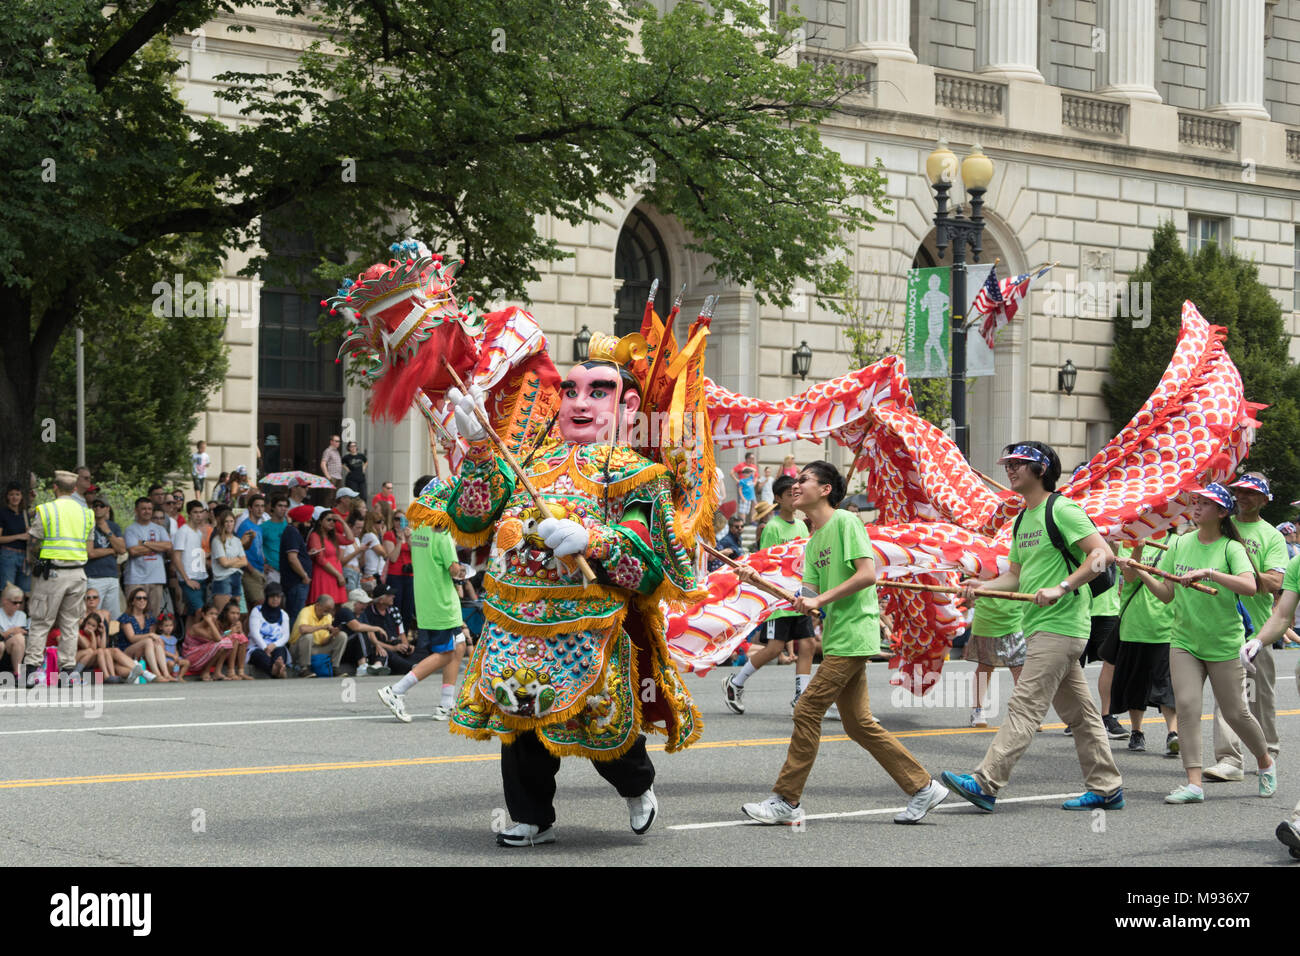 Washington, D.C., USA - 4 juillet 2017, le jour de l'indépendance nationale est la parade Parade du 4 juillet dans la capitale des États-Unis, il comm Banque D'Images